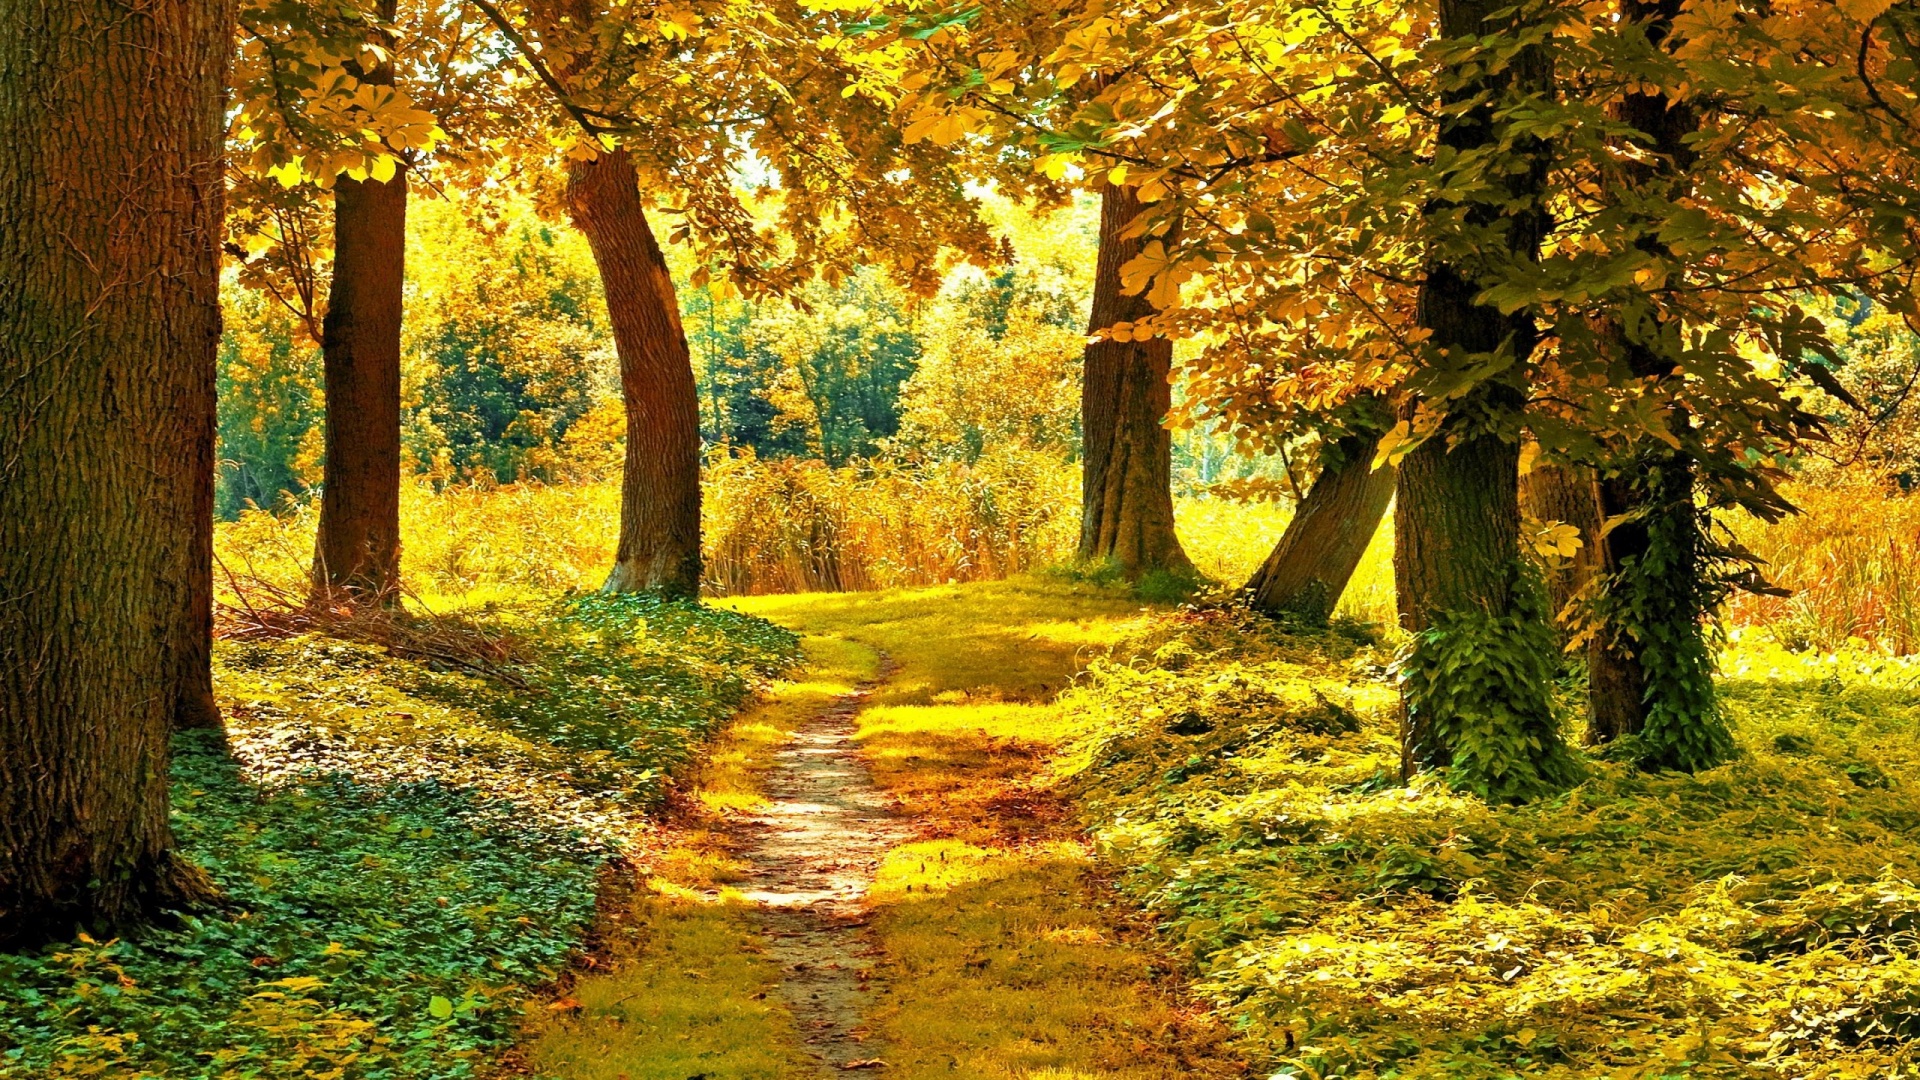 秋天的树木,森林的路,自然风景摄影桌面壁纸